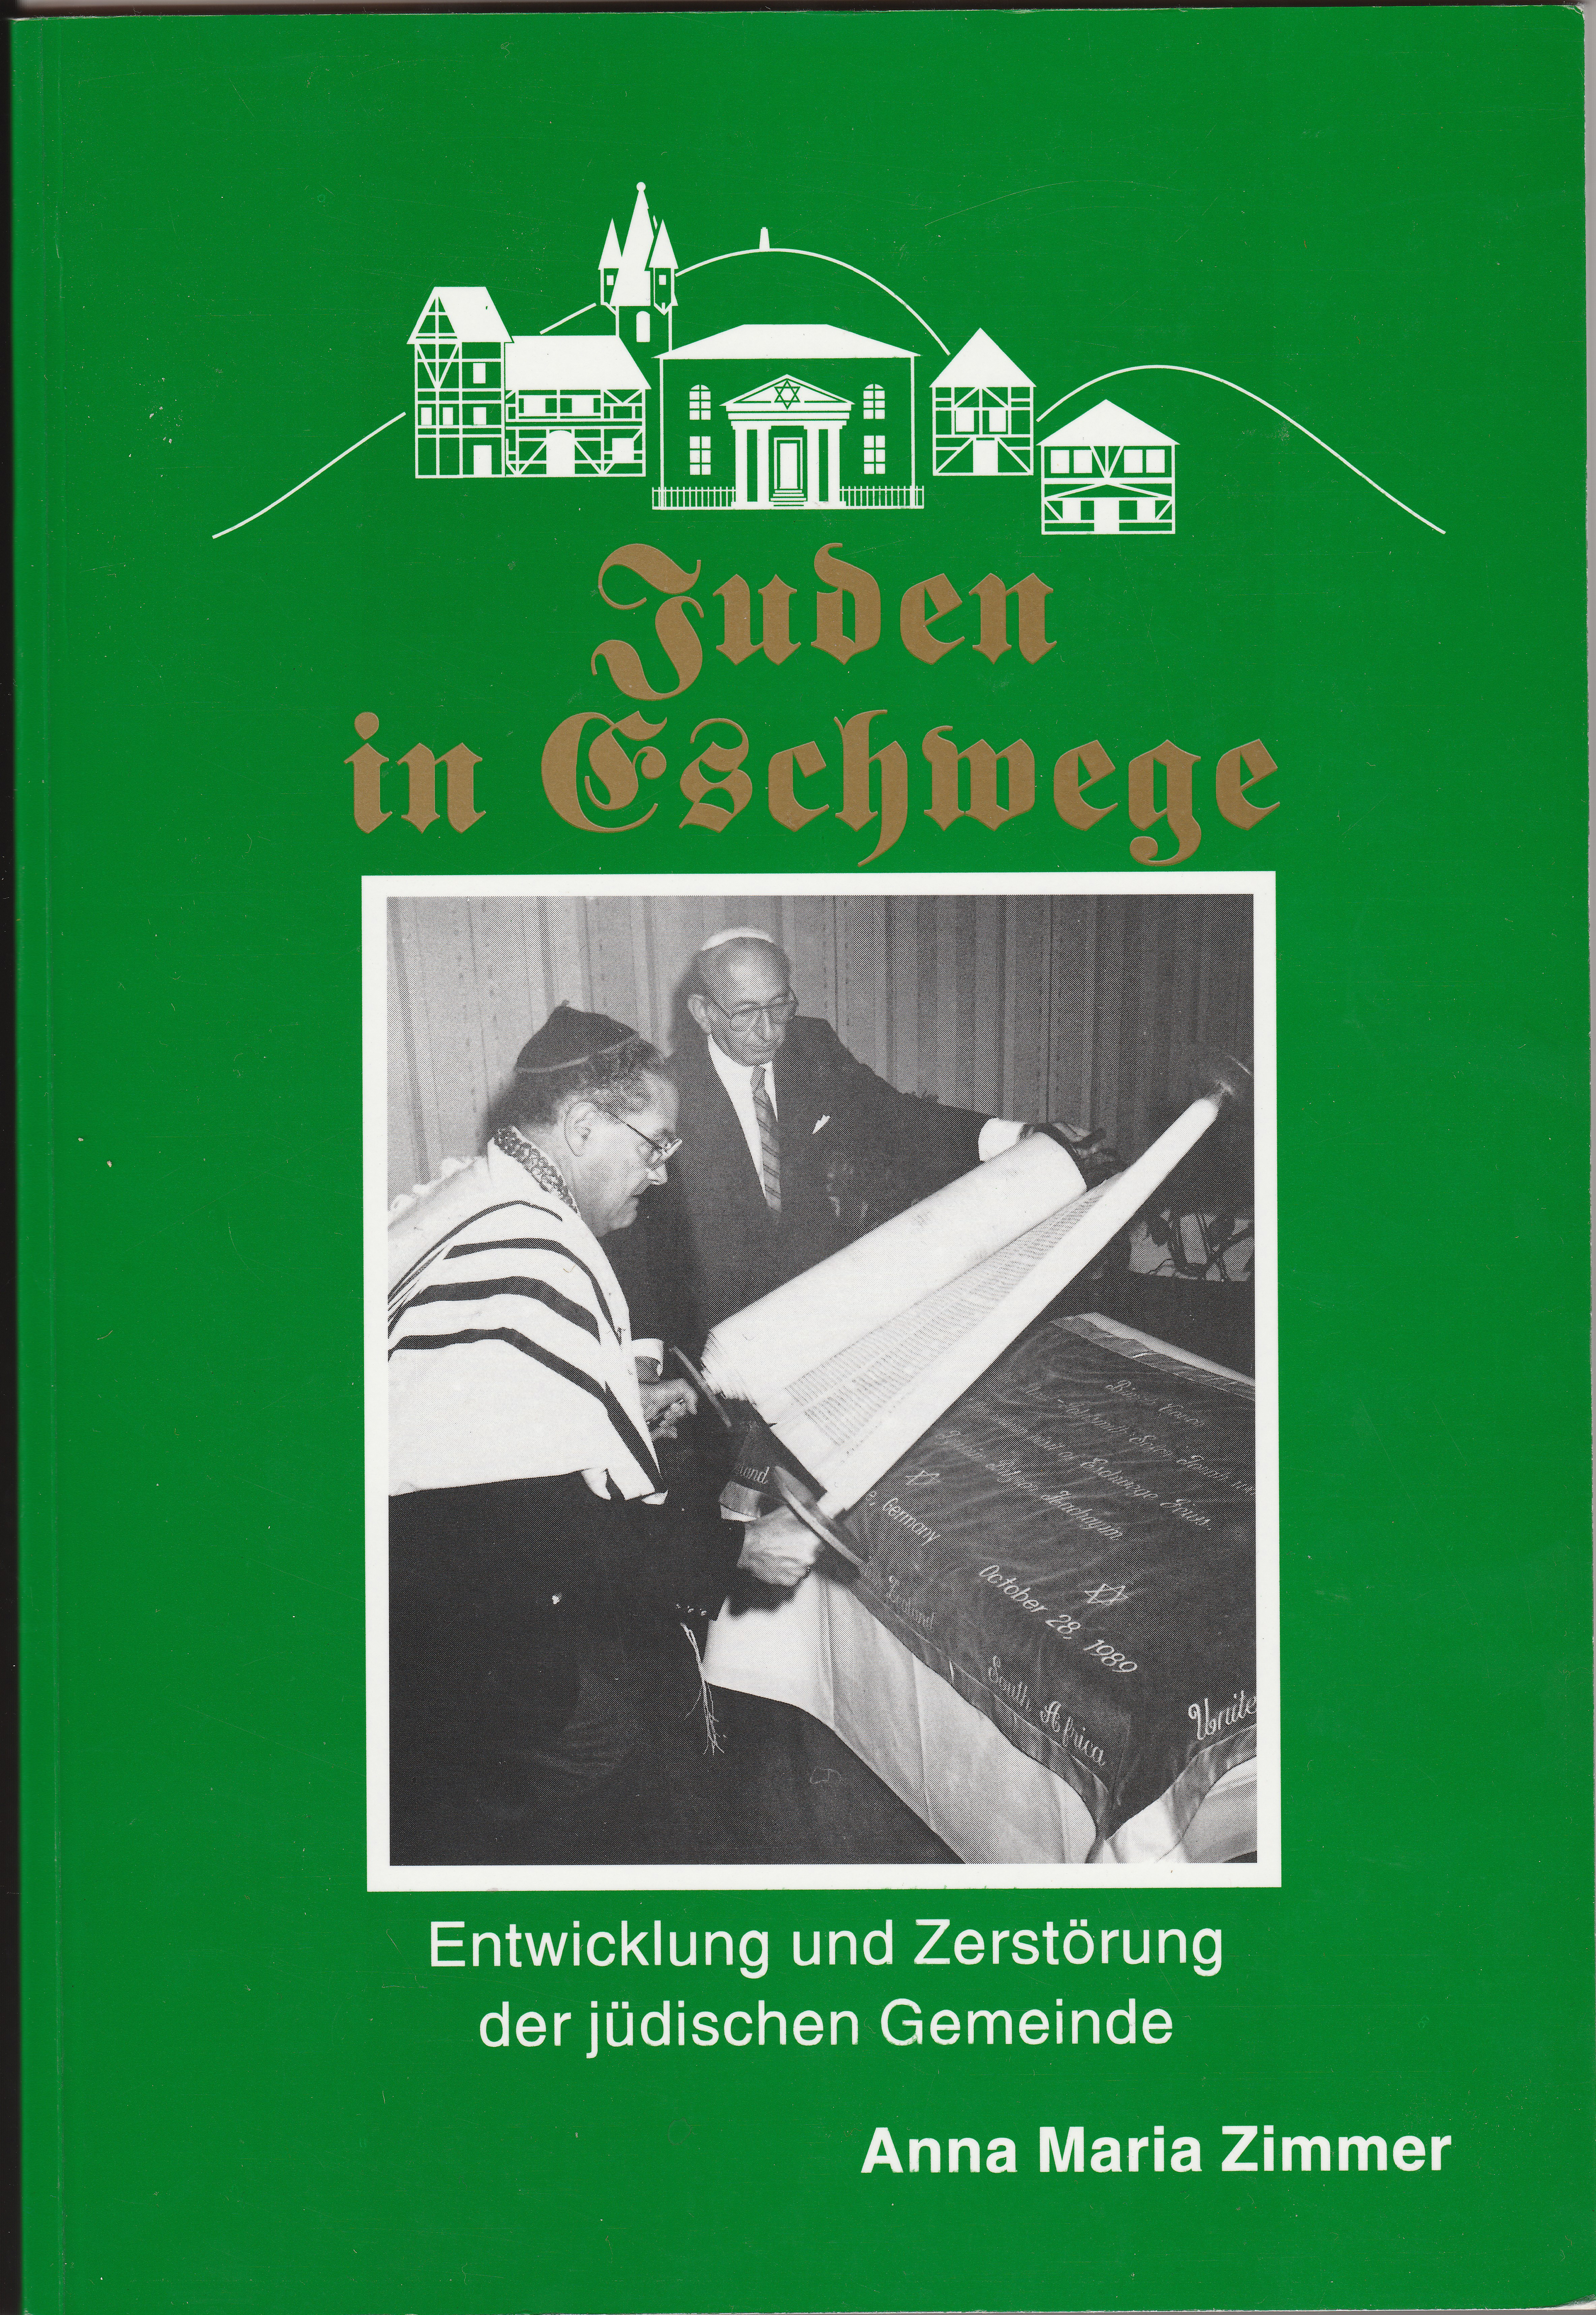 Cover des Buches „Juden in Eschwege“ von Anna Maria Zimmer